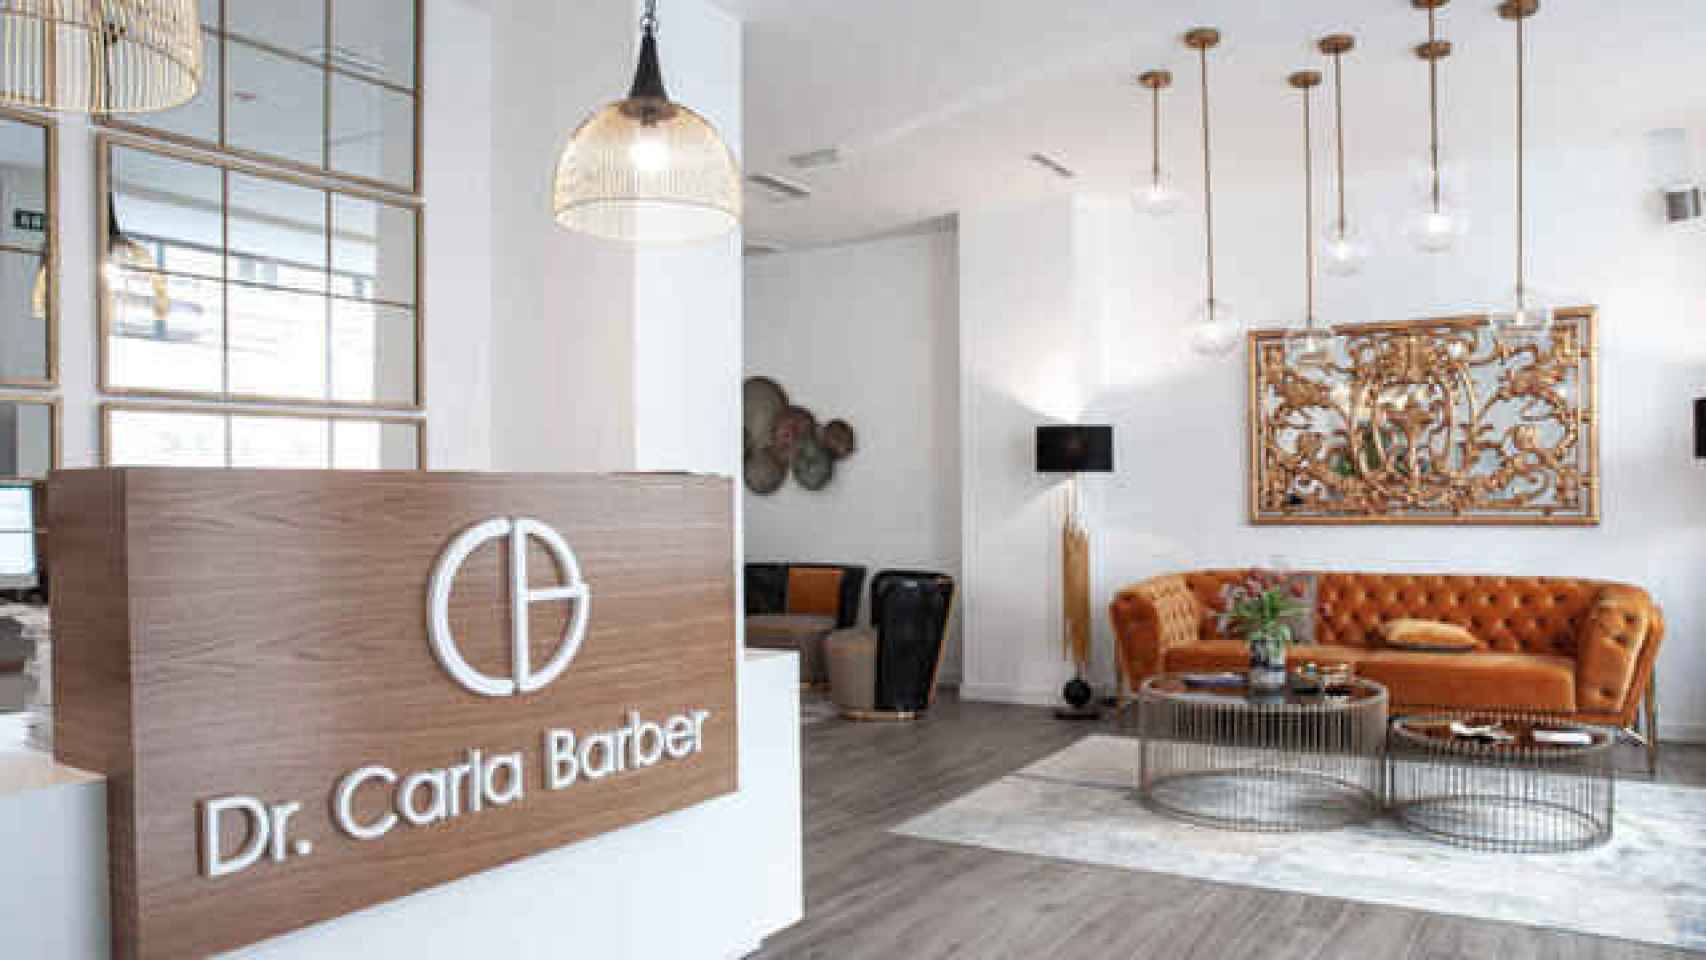 Carla Barber tiene clínicas en Madrid, Las Palmas de Gran Canaria y Valencia.